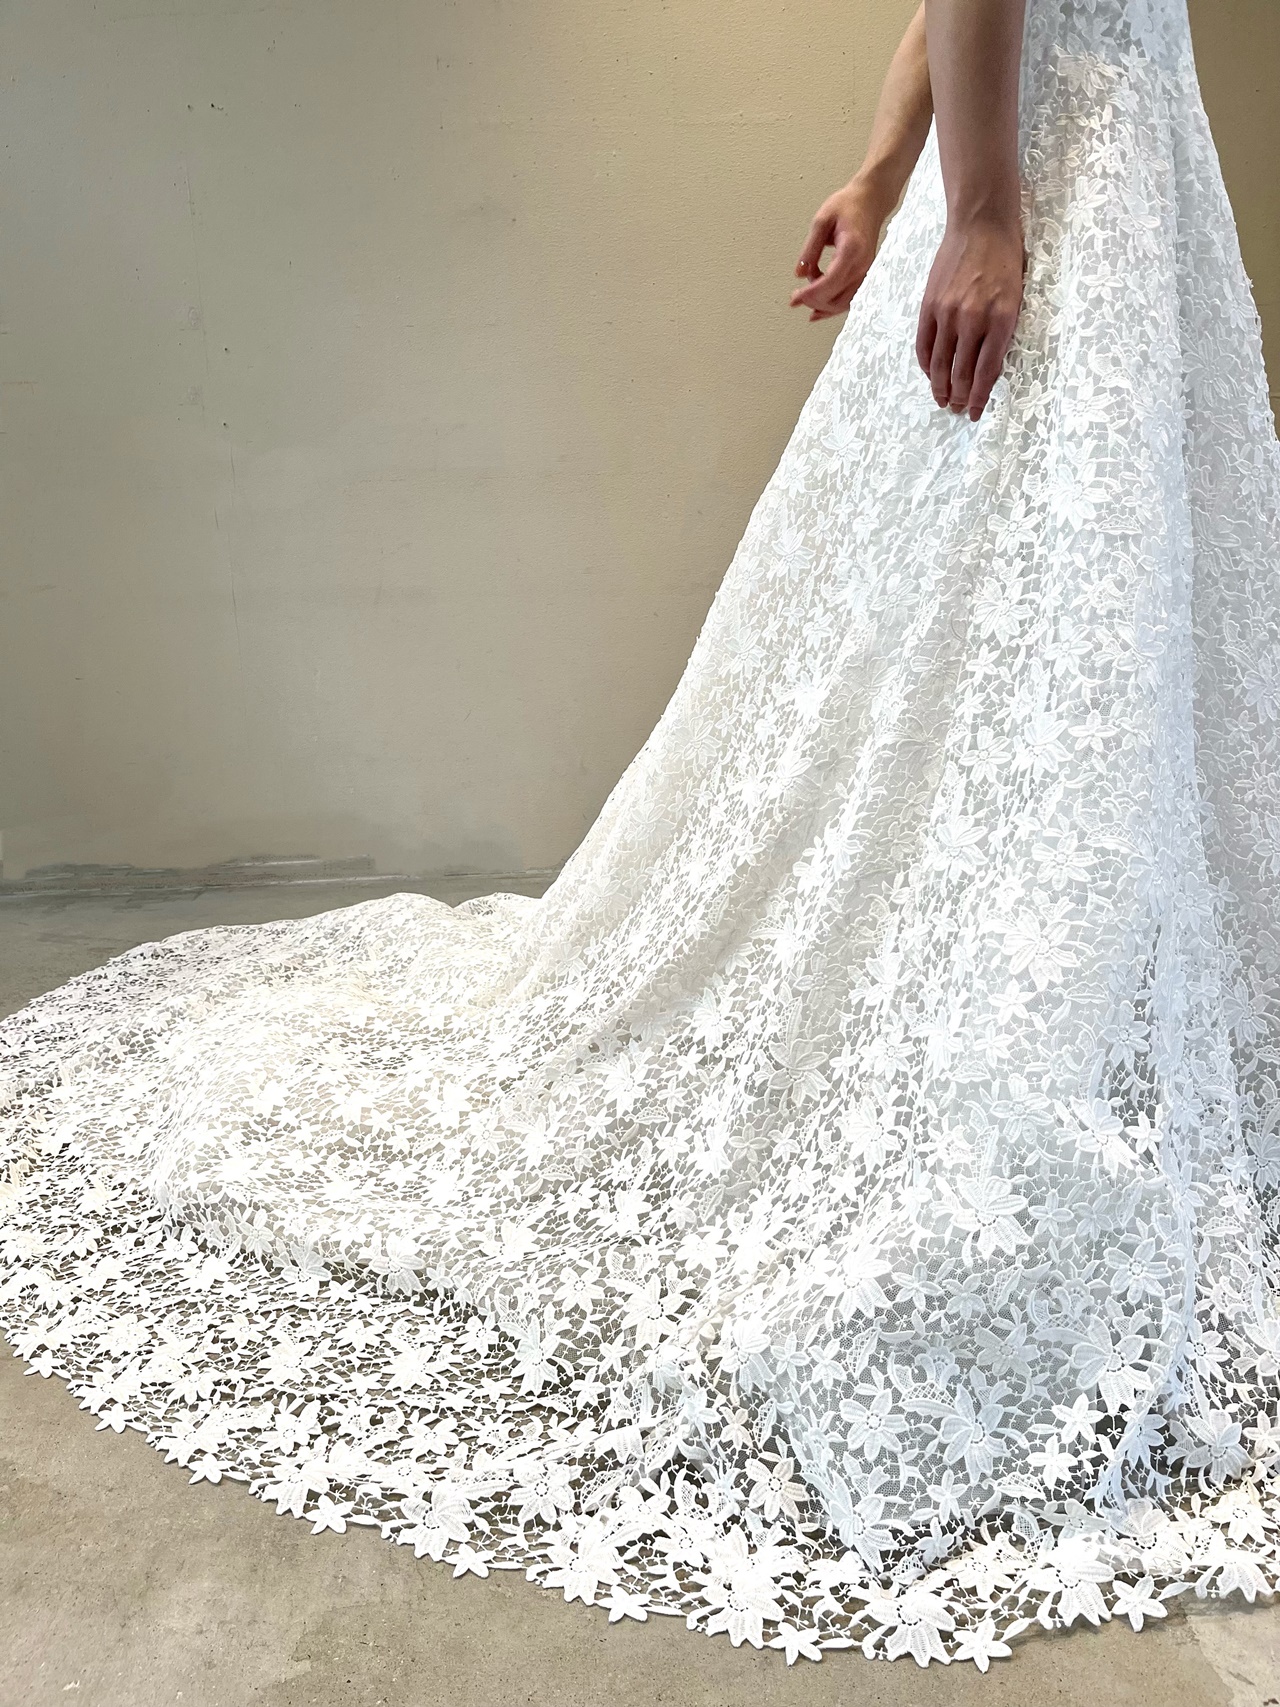 THE TREAT DRESSINGよりロマンティックな刺繍を施したMonique Lhuillierのウェディングドレスをご紹介します